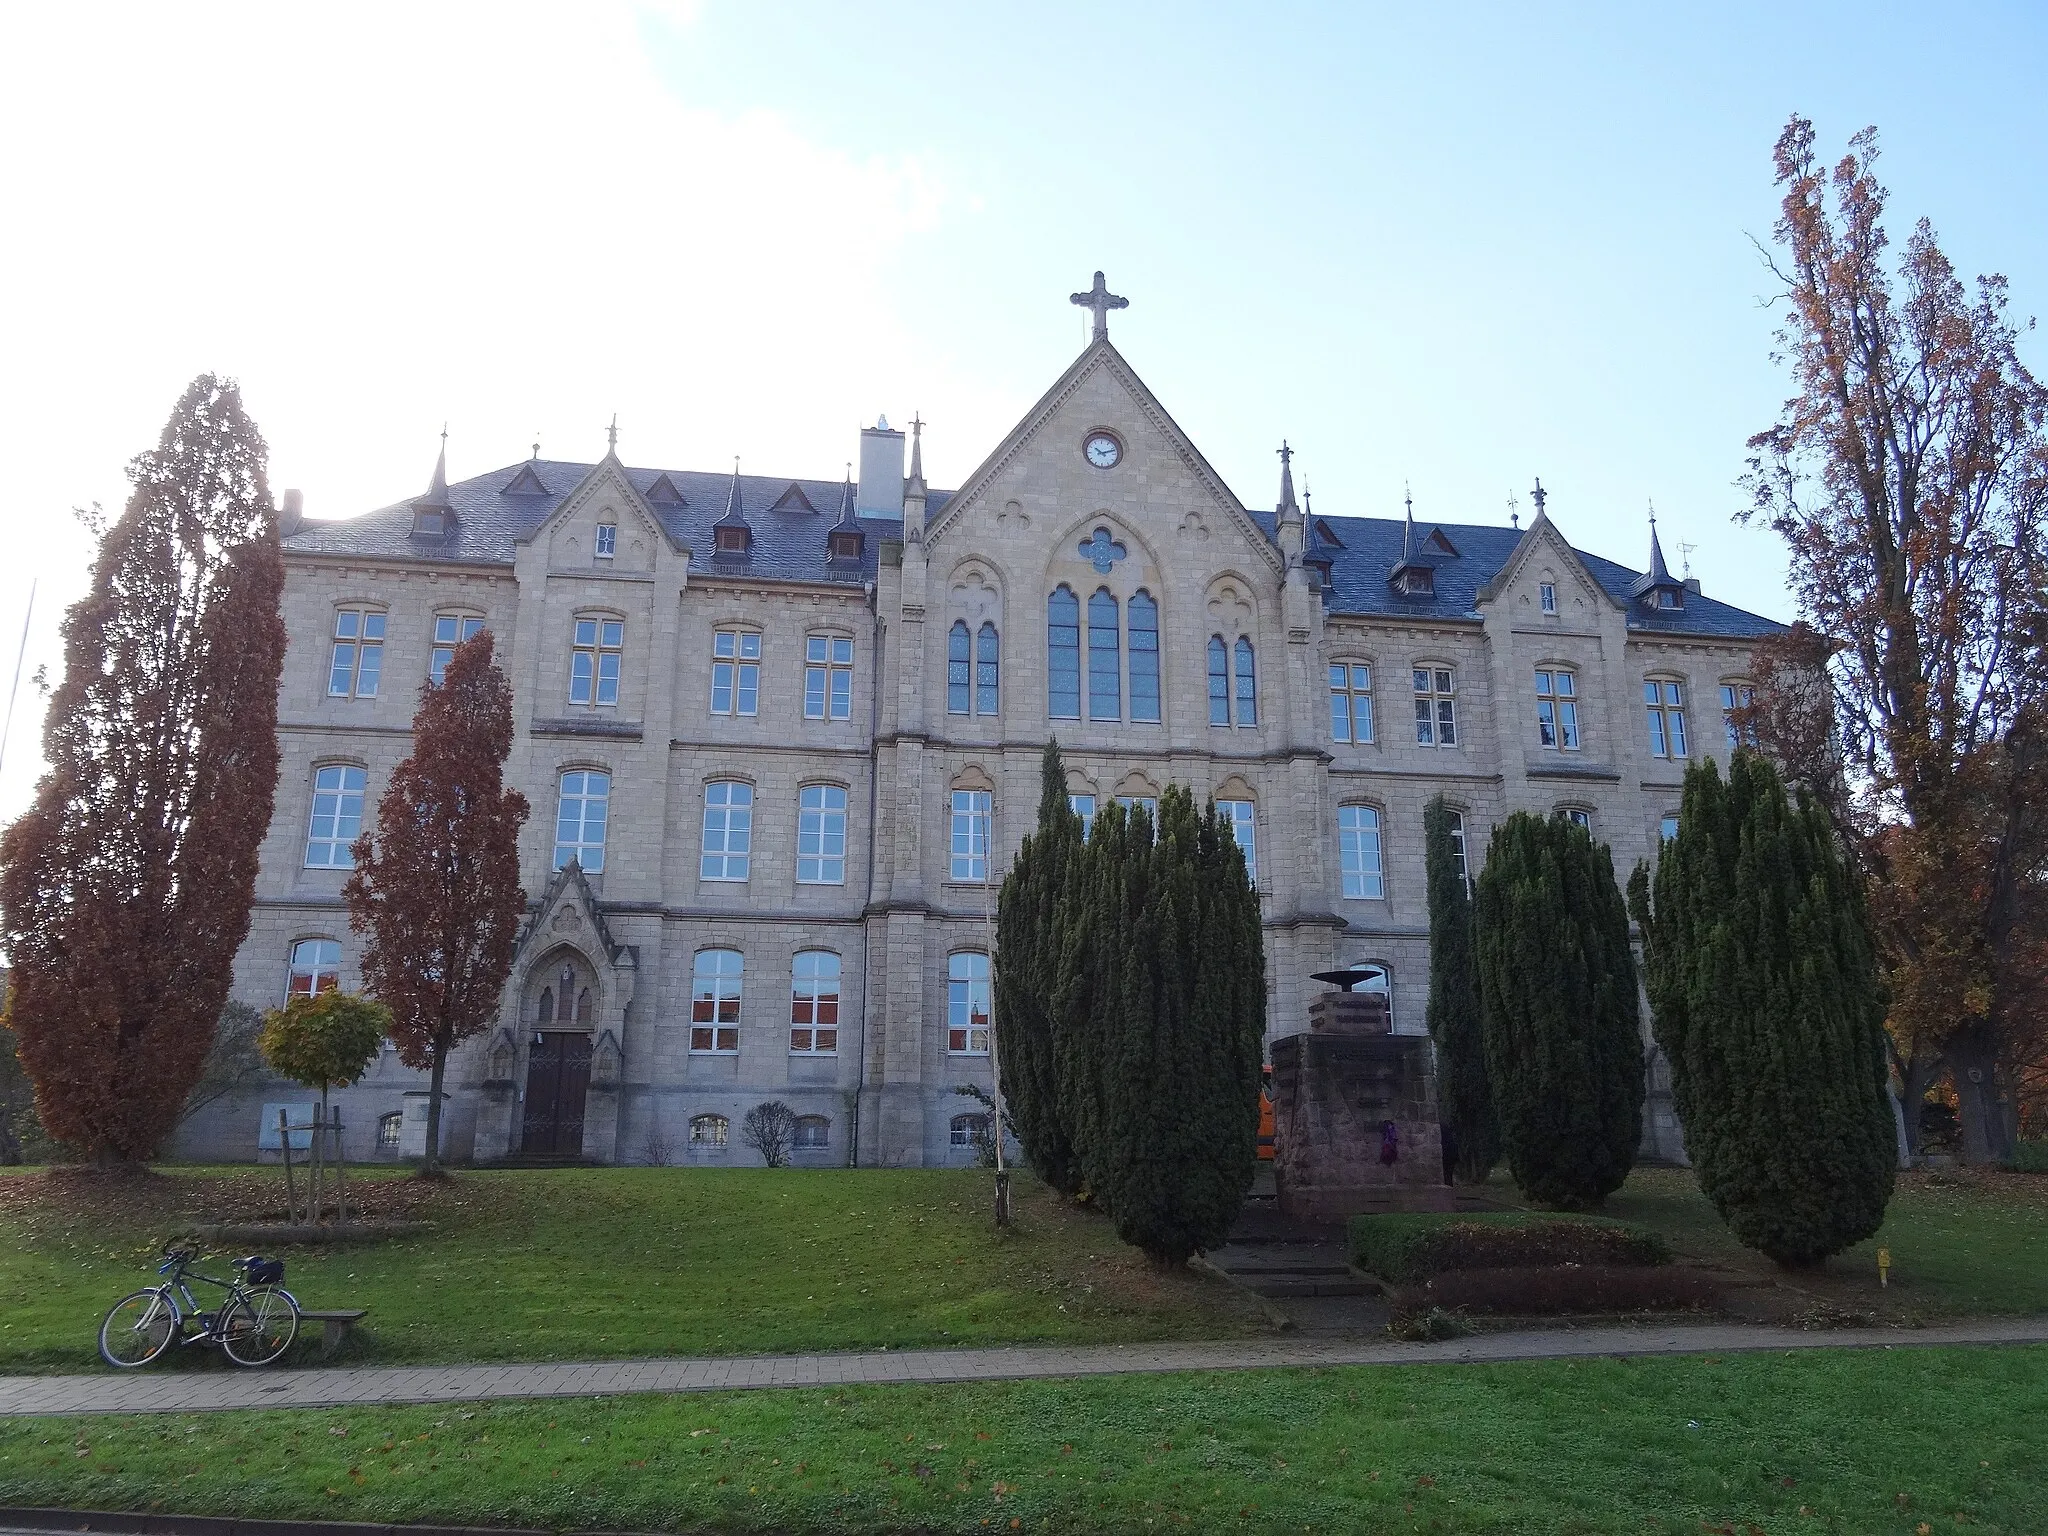 Photo showing: ehem. Fürstliches Gymnasium zu Sondershausen mit neogotischer Fassade von 1881, entworfen von Architekt Carl Frühling